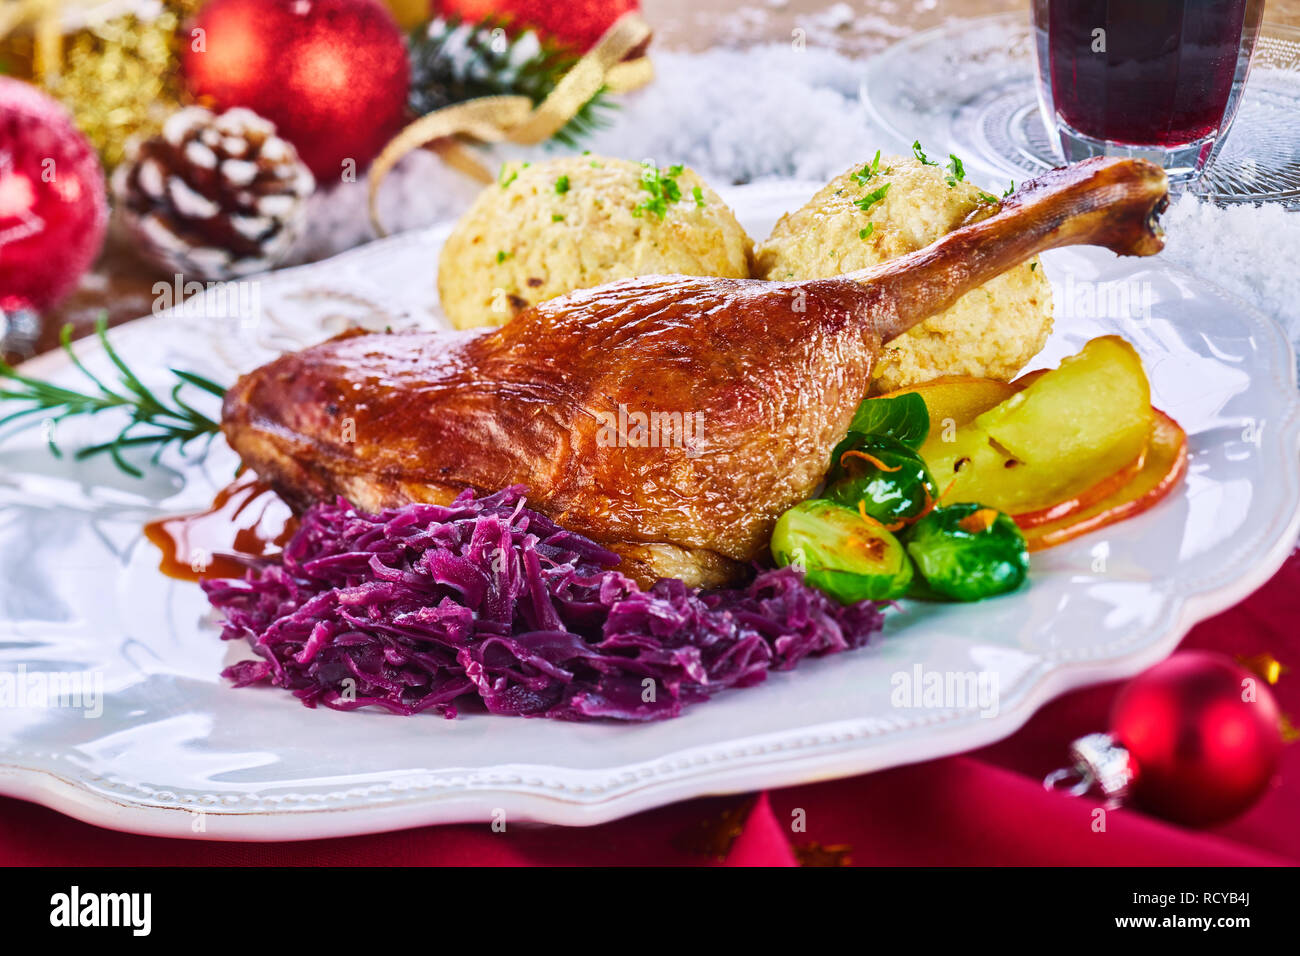 Golden gebratene Xmas Türkei Bein und Gemüse serviert auf einem Tablett von Weihnachtsschmuck auf rotem Tuch umgeben in einem Restaurant zu feiern, die der Stockfoto